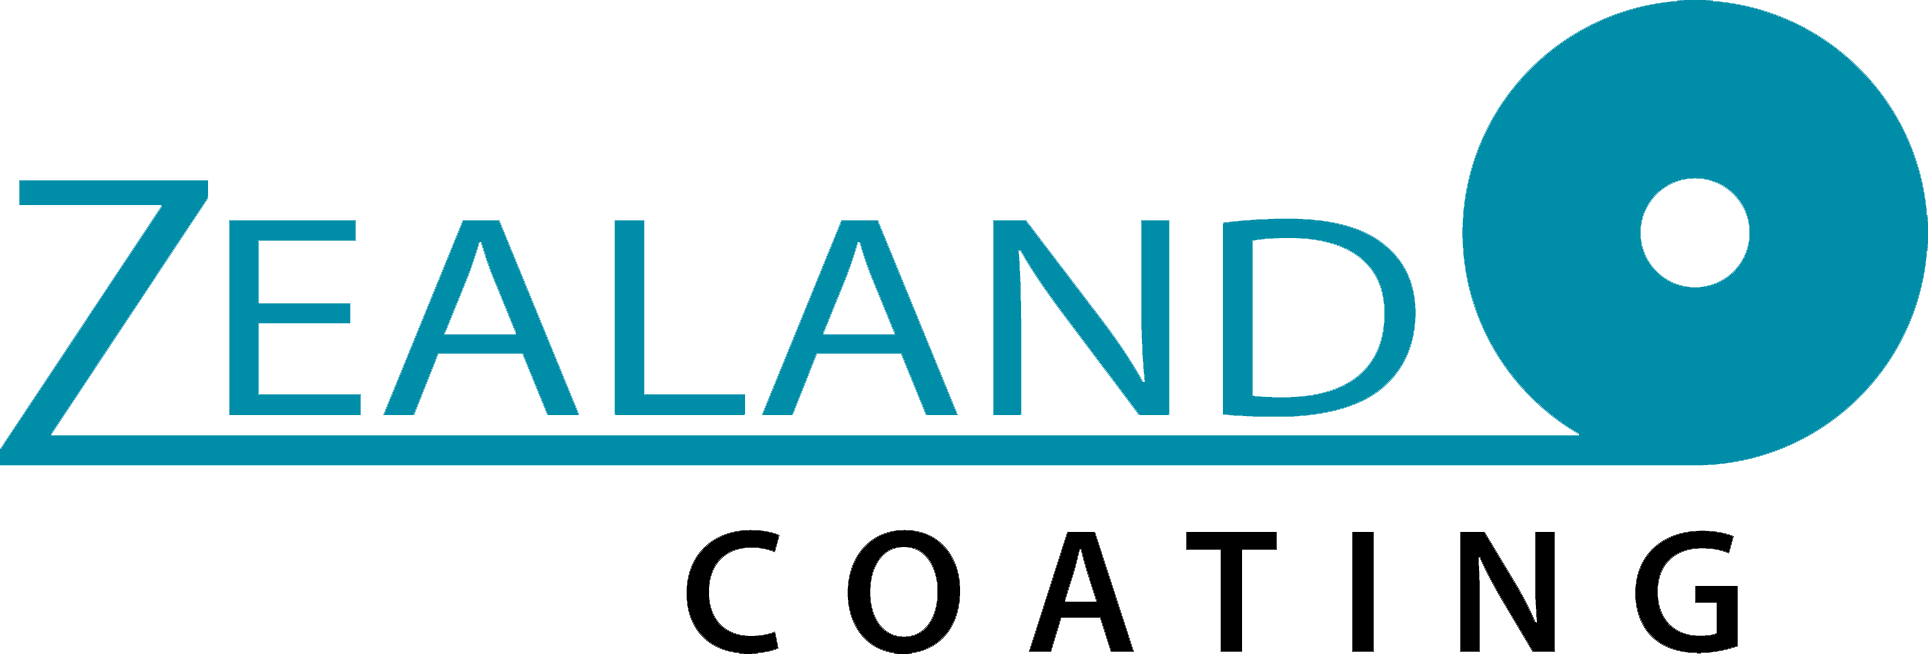 zealand coating logo